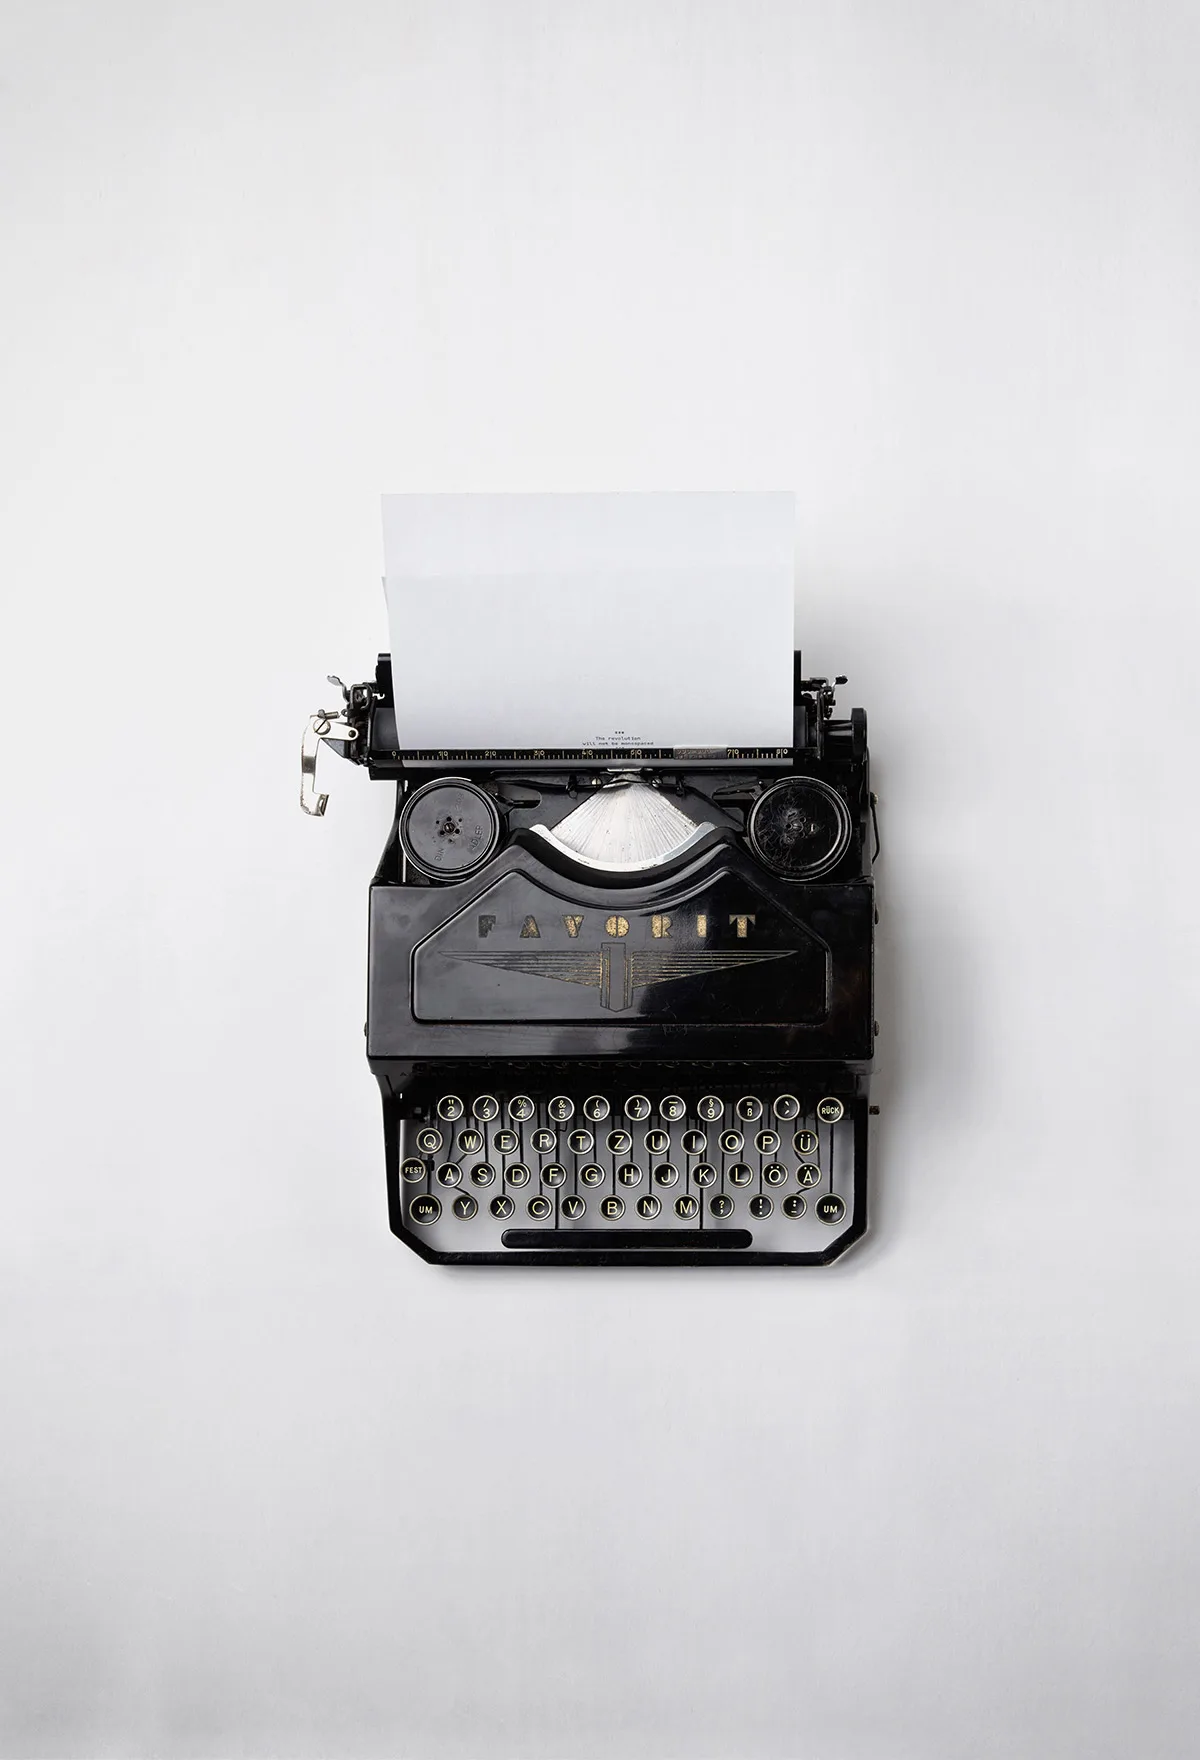 Foto einer Schreibmaschine